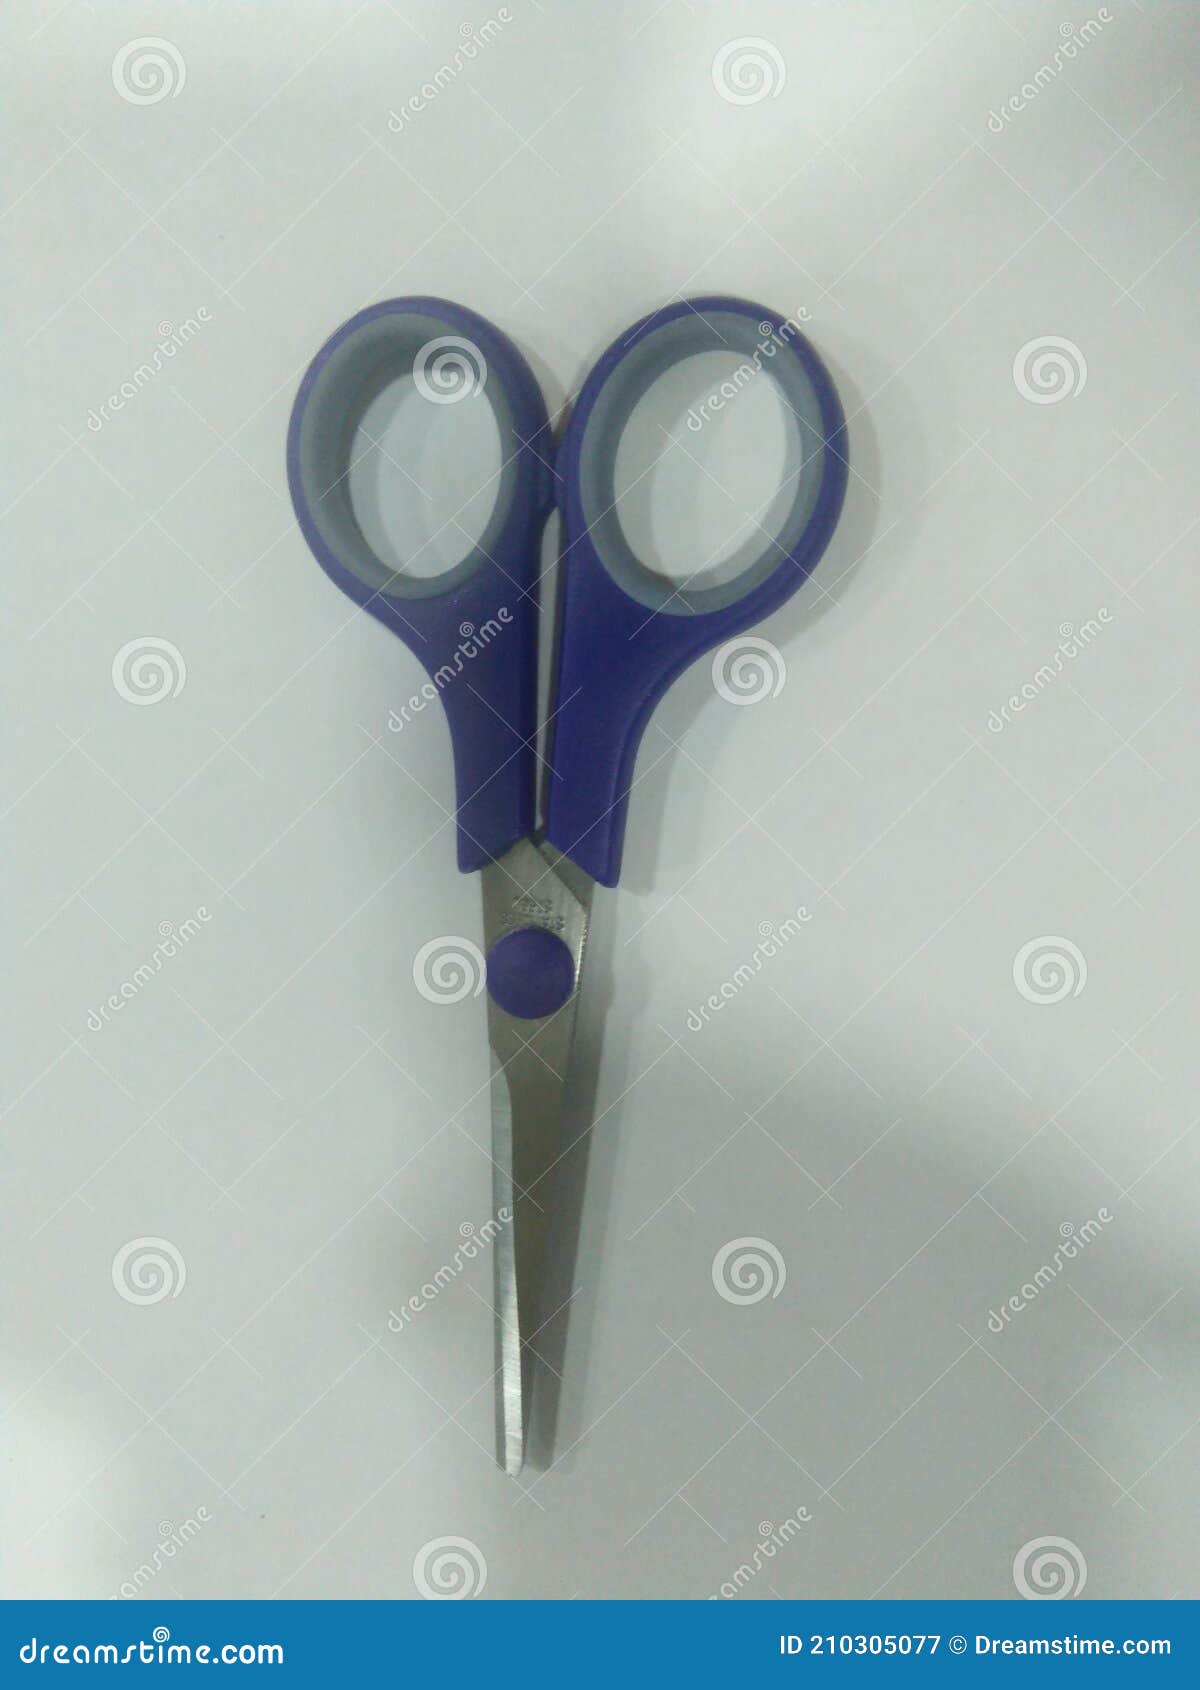 scissor,small scissor blue scisor